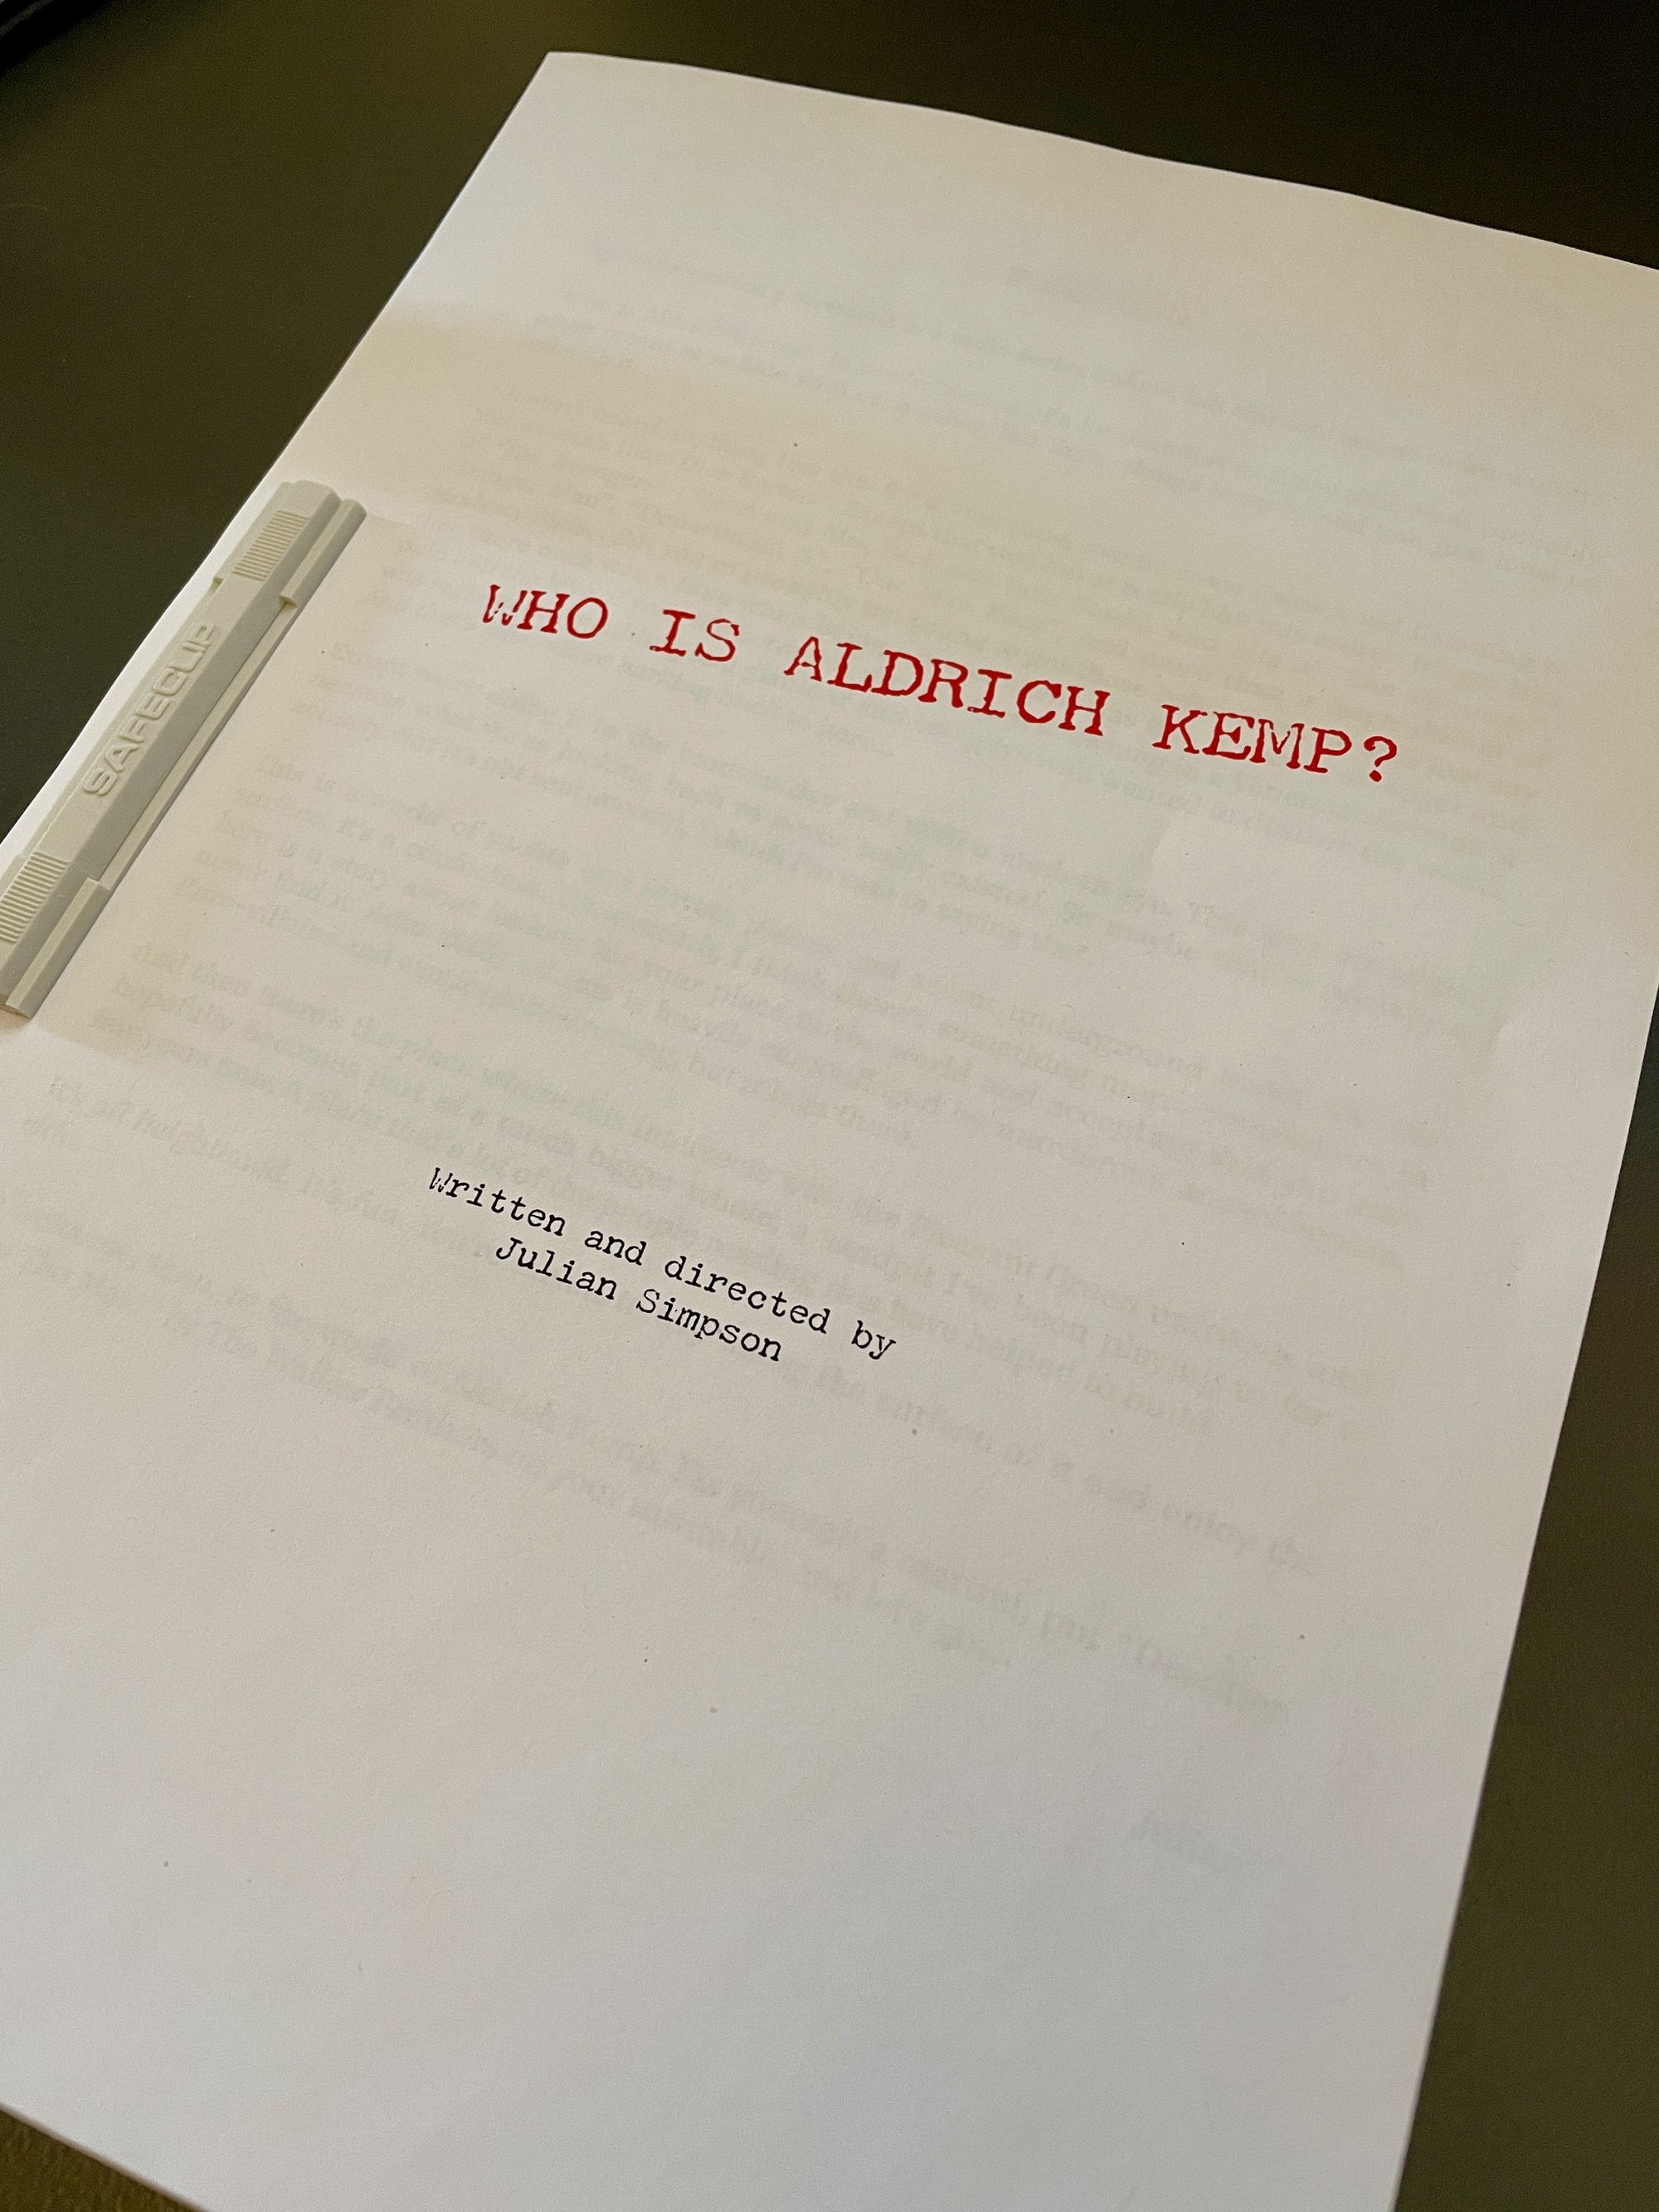 Who Is Aldrich Kemp?